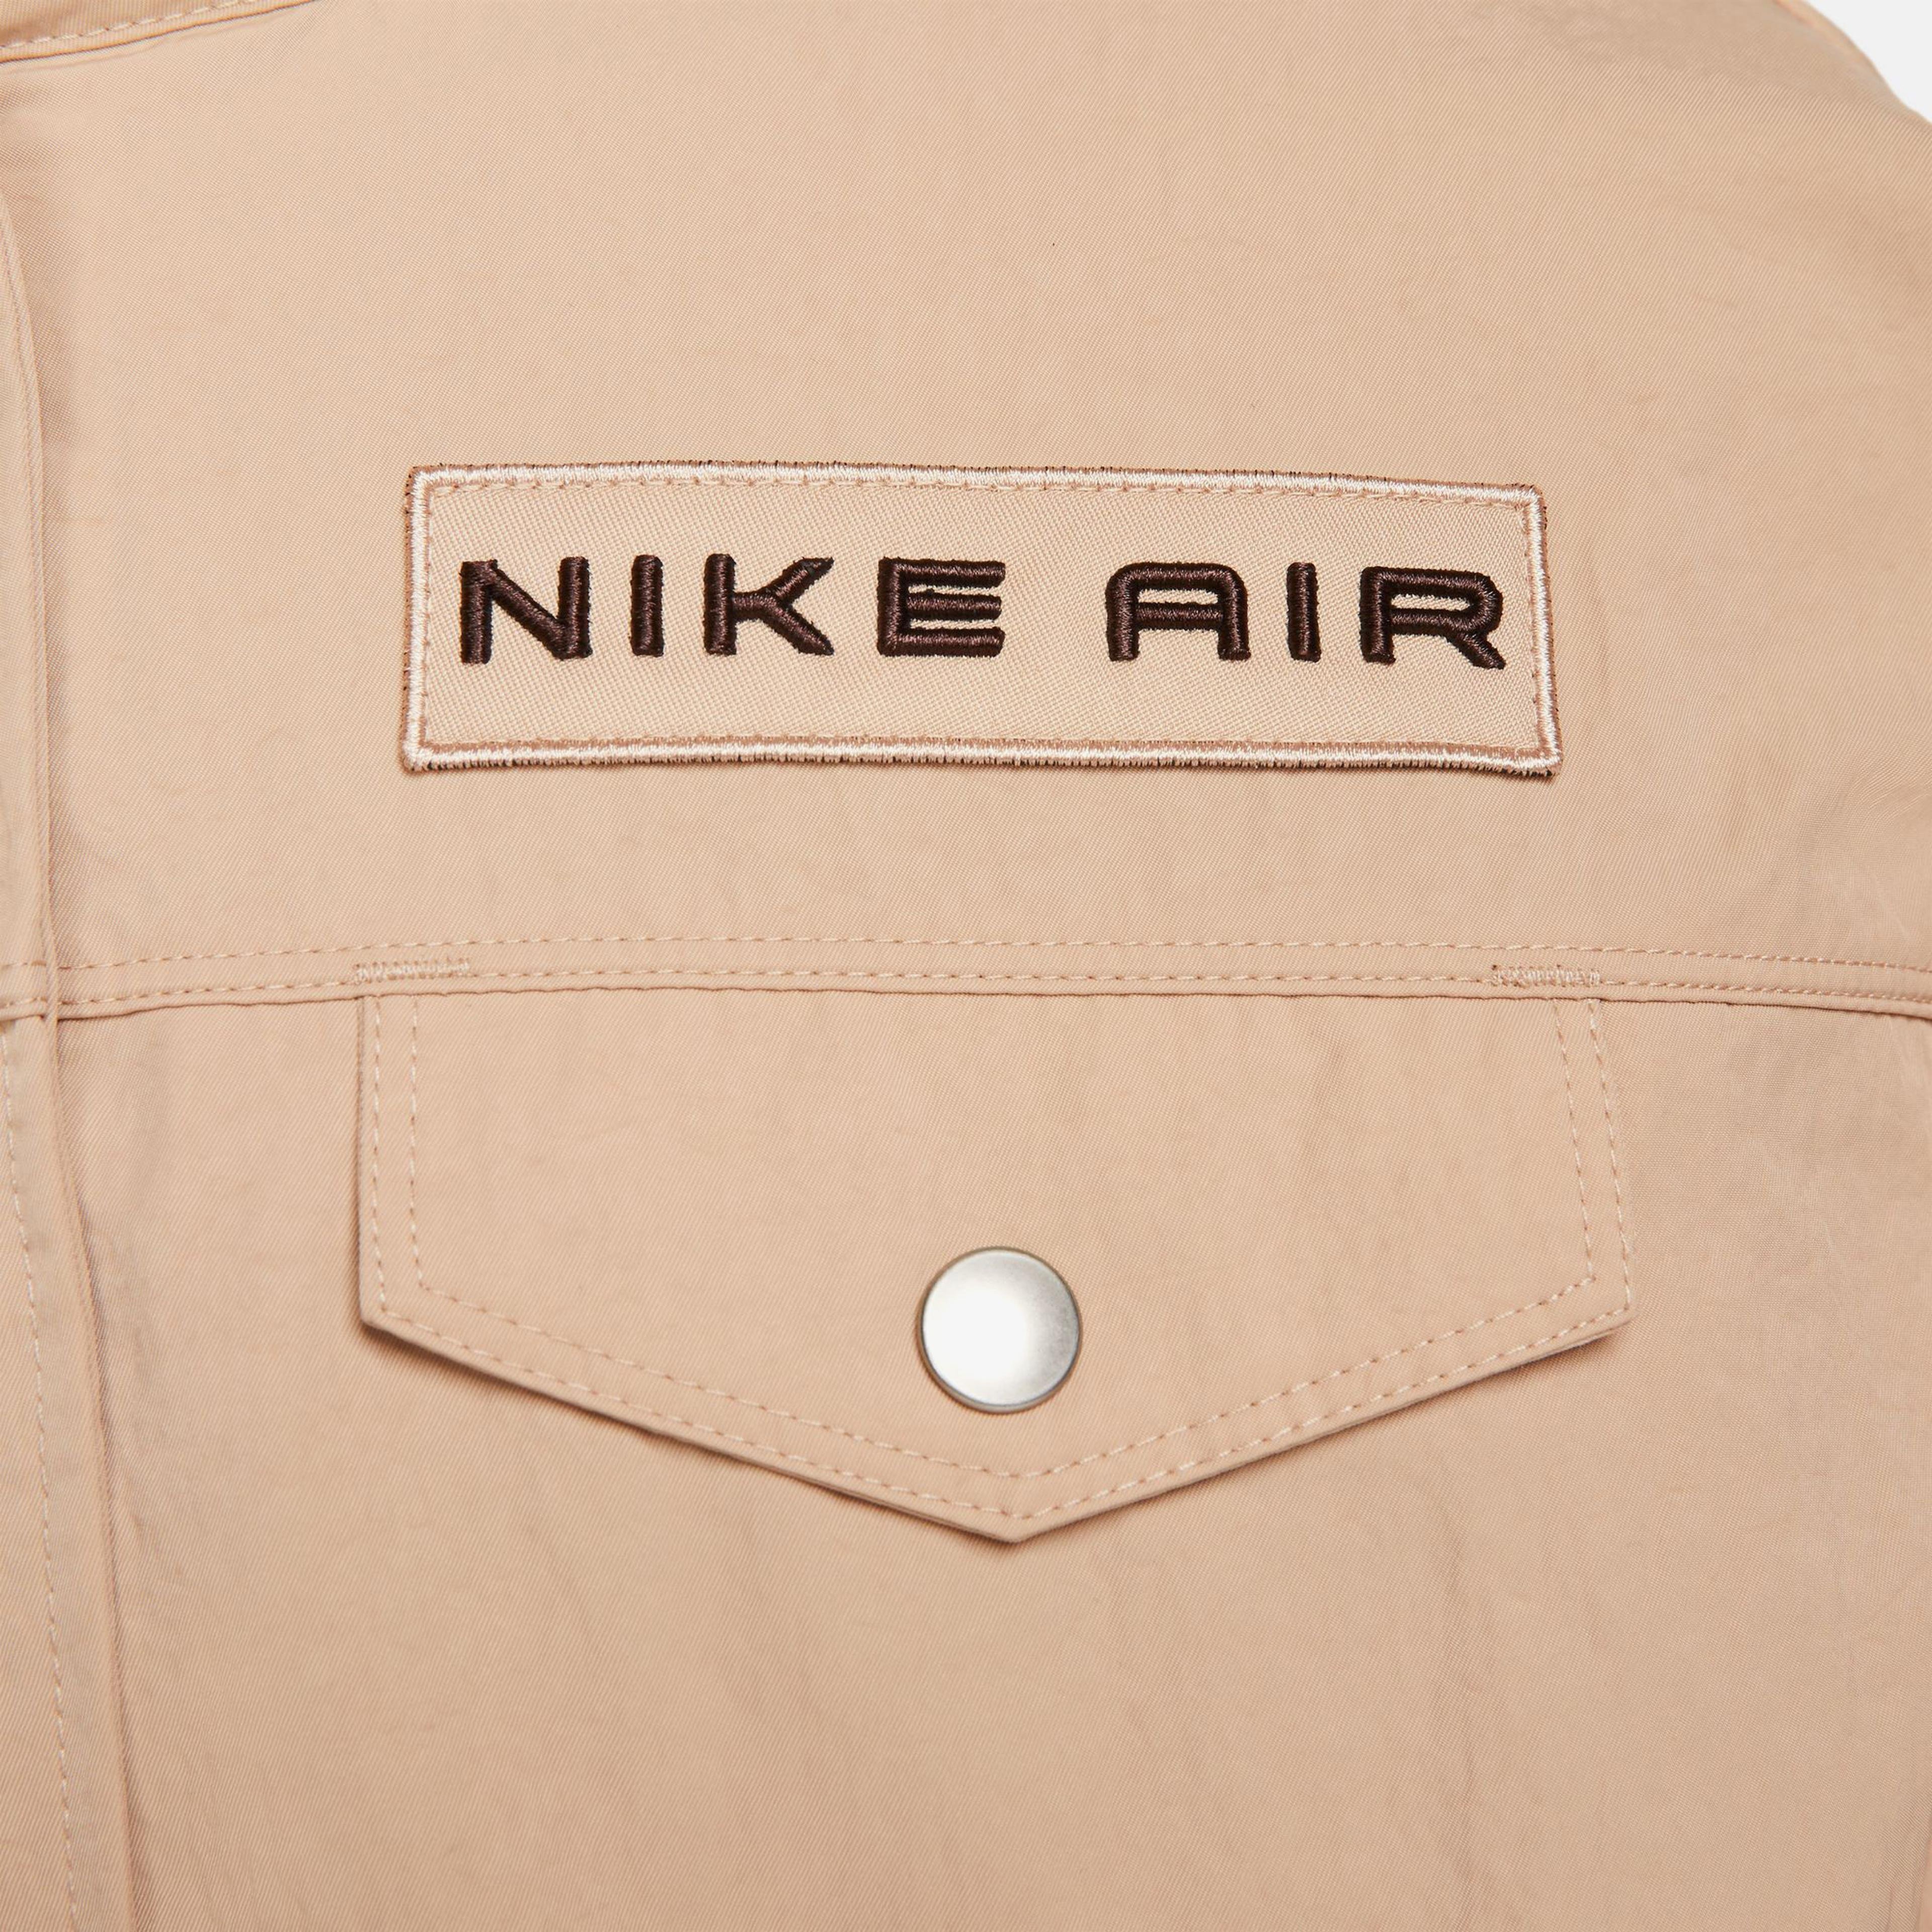 Nike Sportswear Air Woven Mod Crop Kadın Kahverengi Ceket